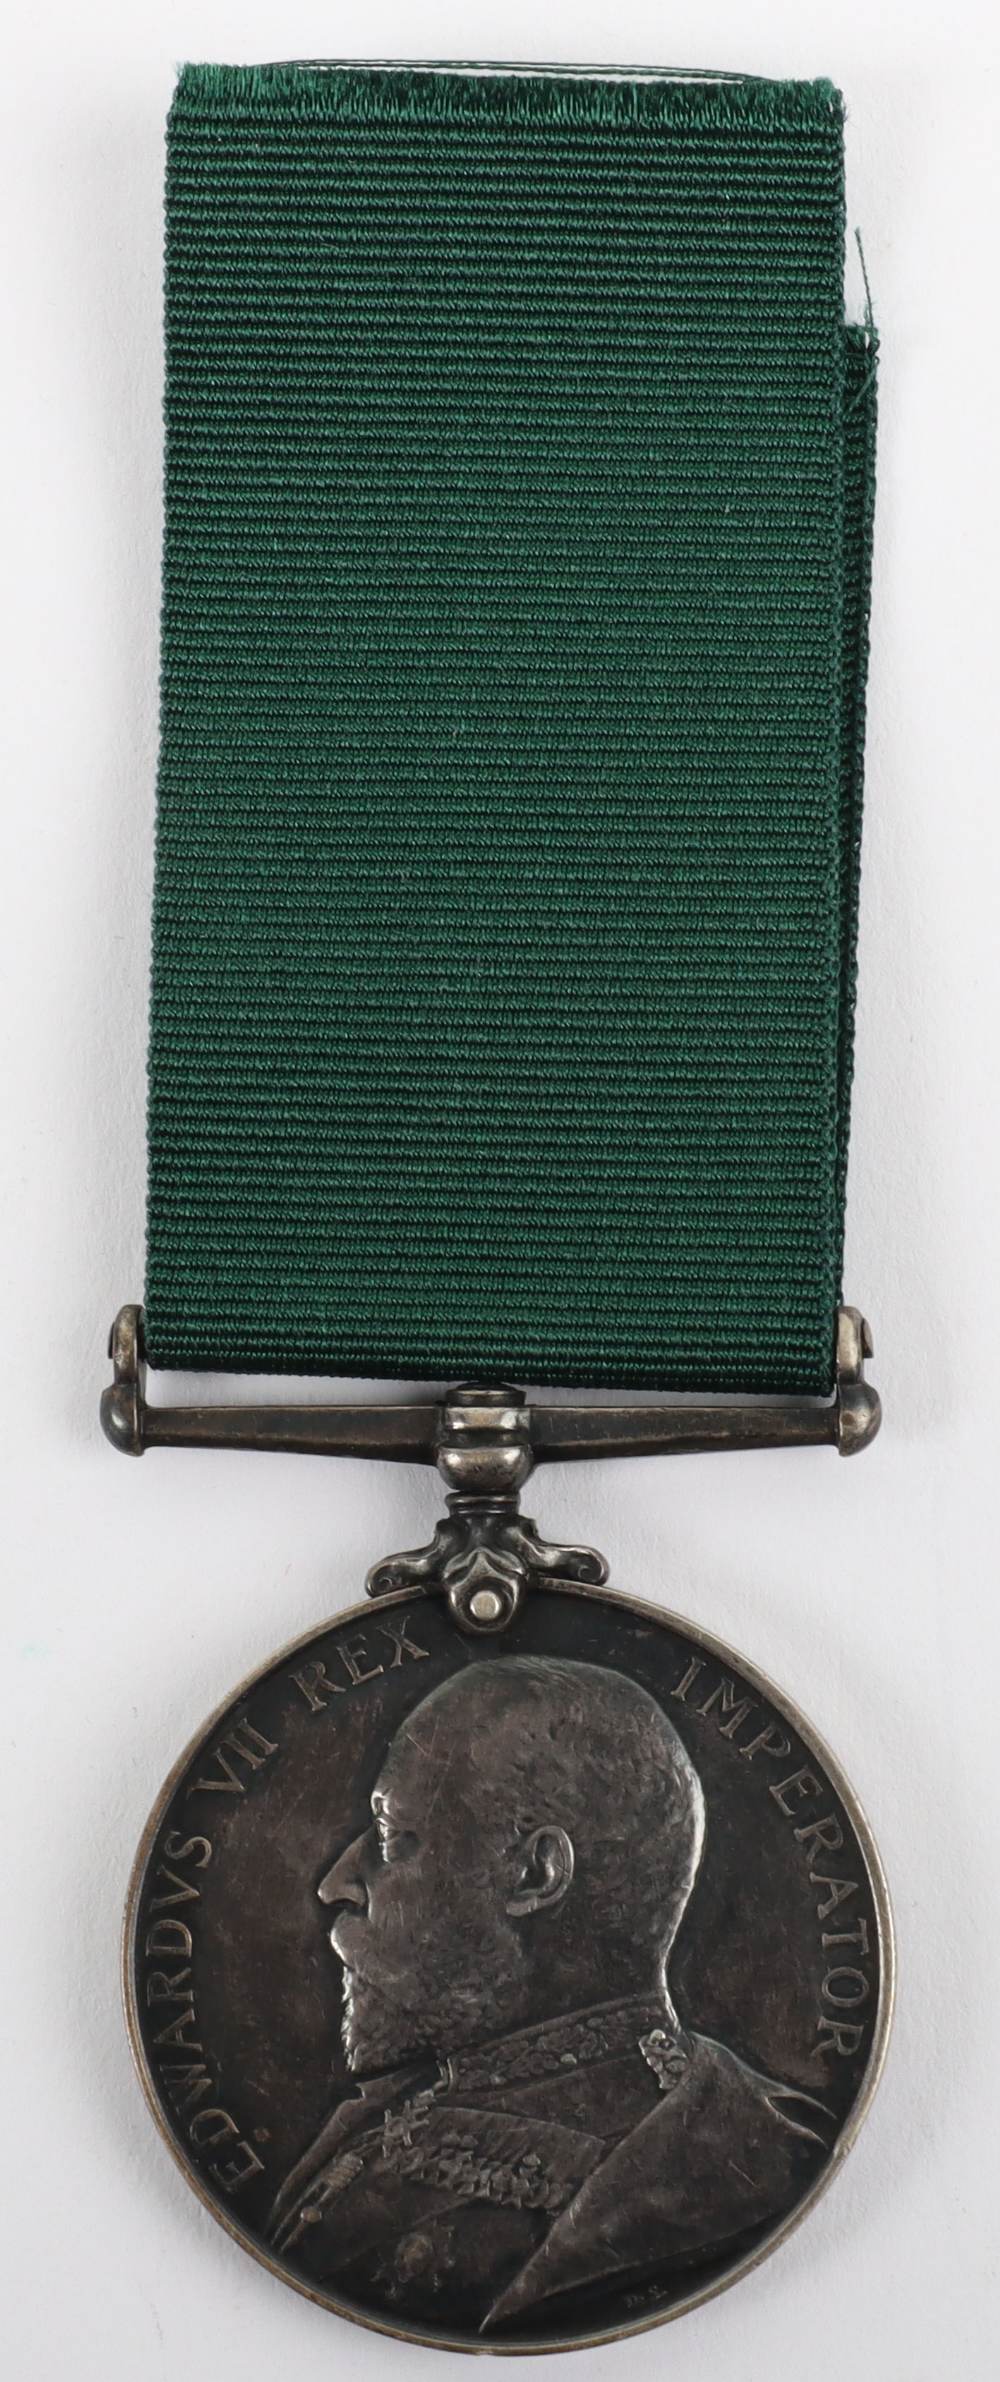 Edward VII Volunteer Force Long Service Medal 4th Volunteer Battalion Durham Light Infantry